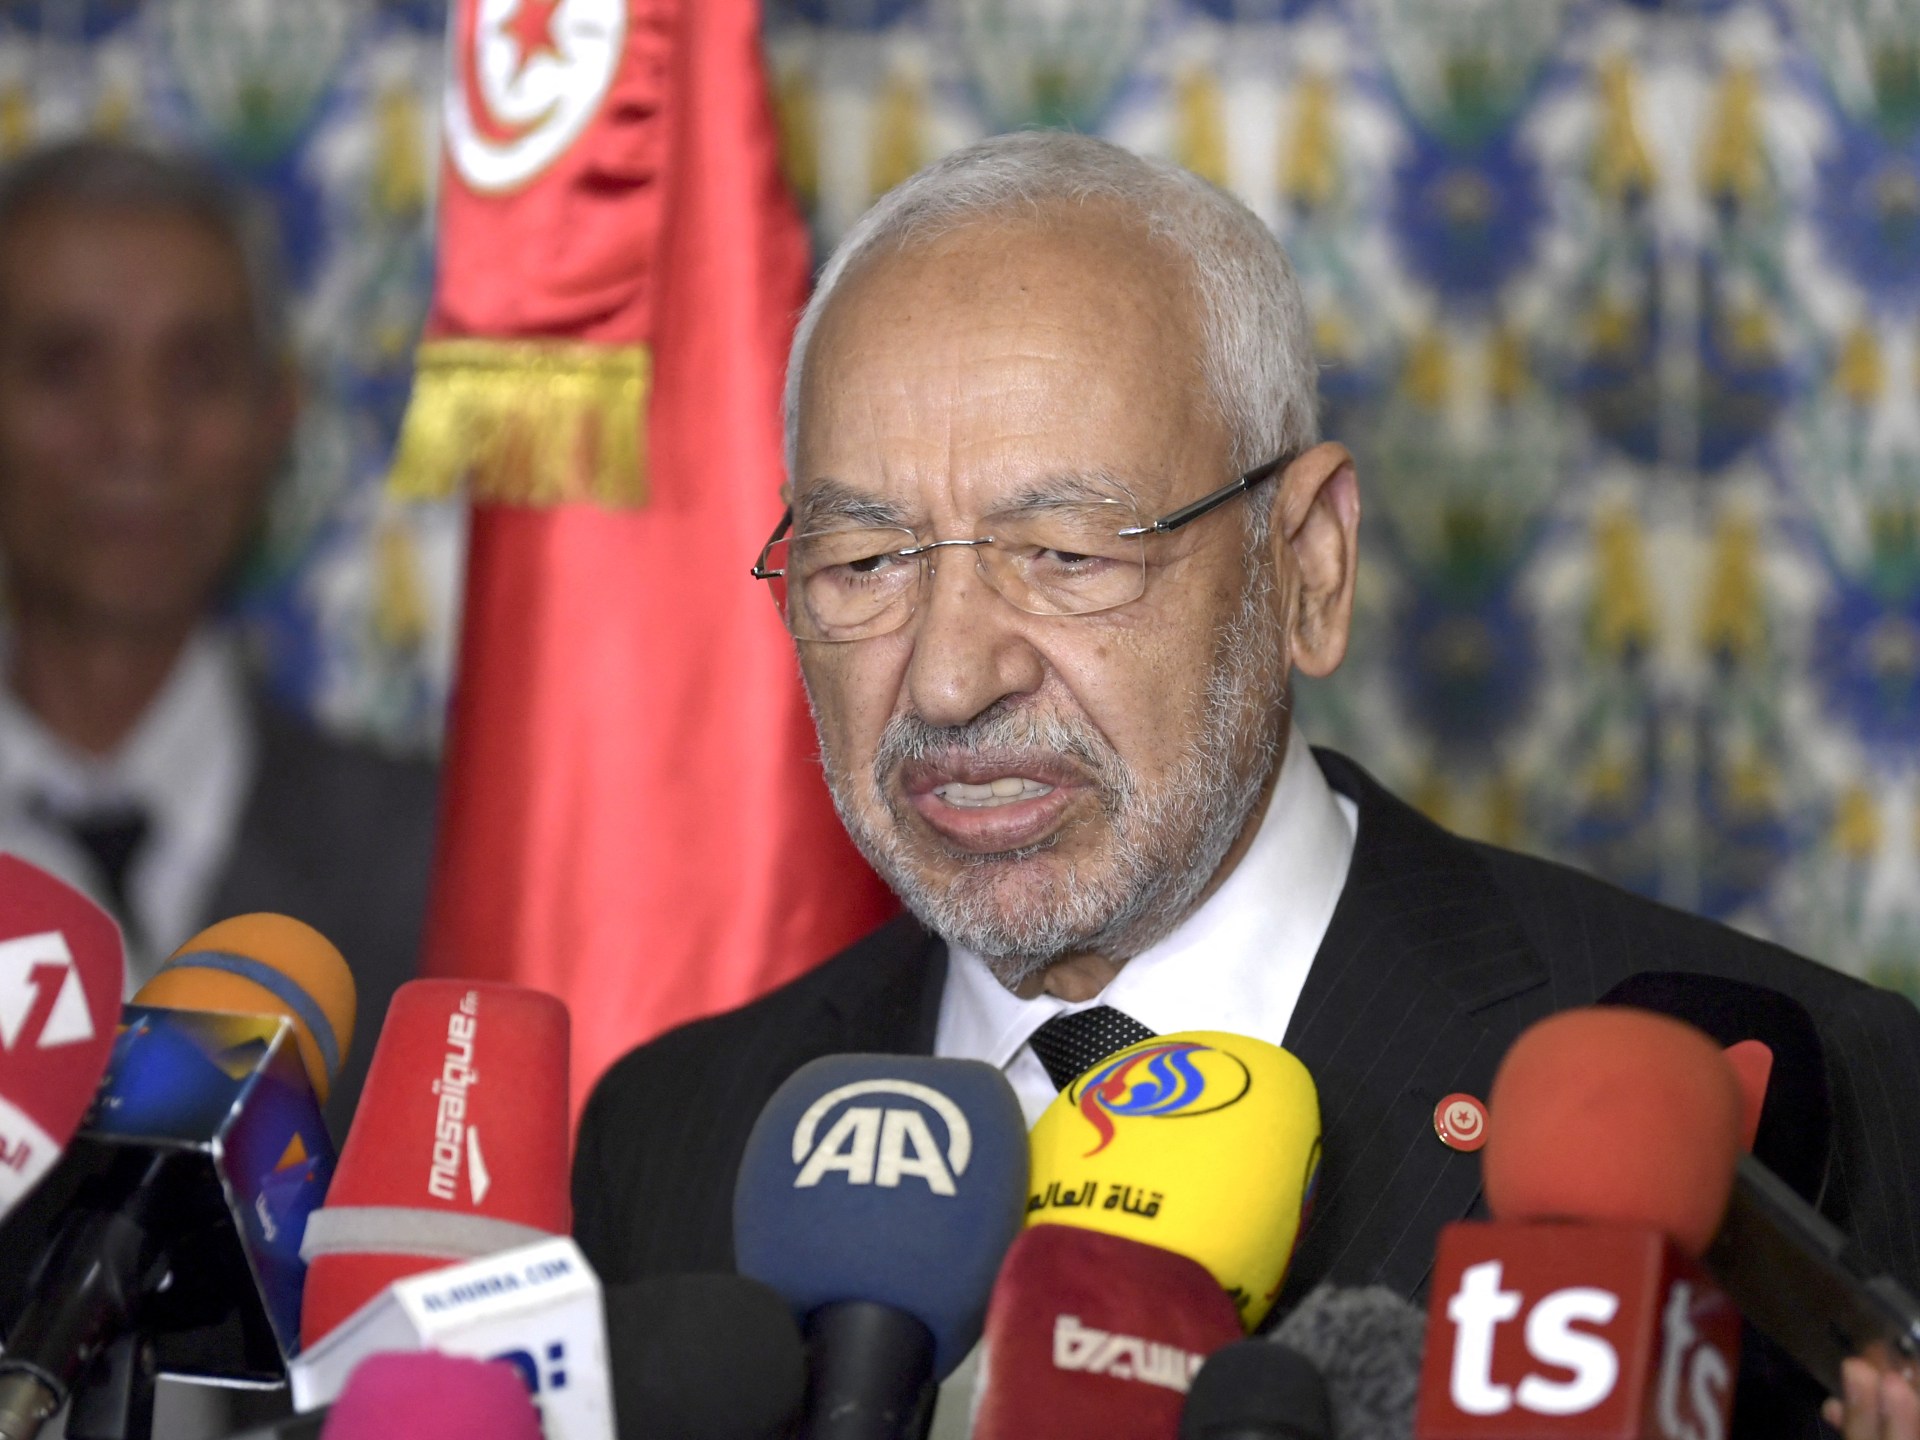 Penangkapan pemimpin oposisi Tunisia mengundang kecaman global |  Berita